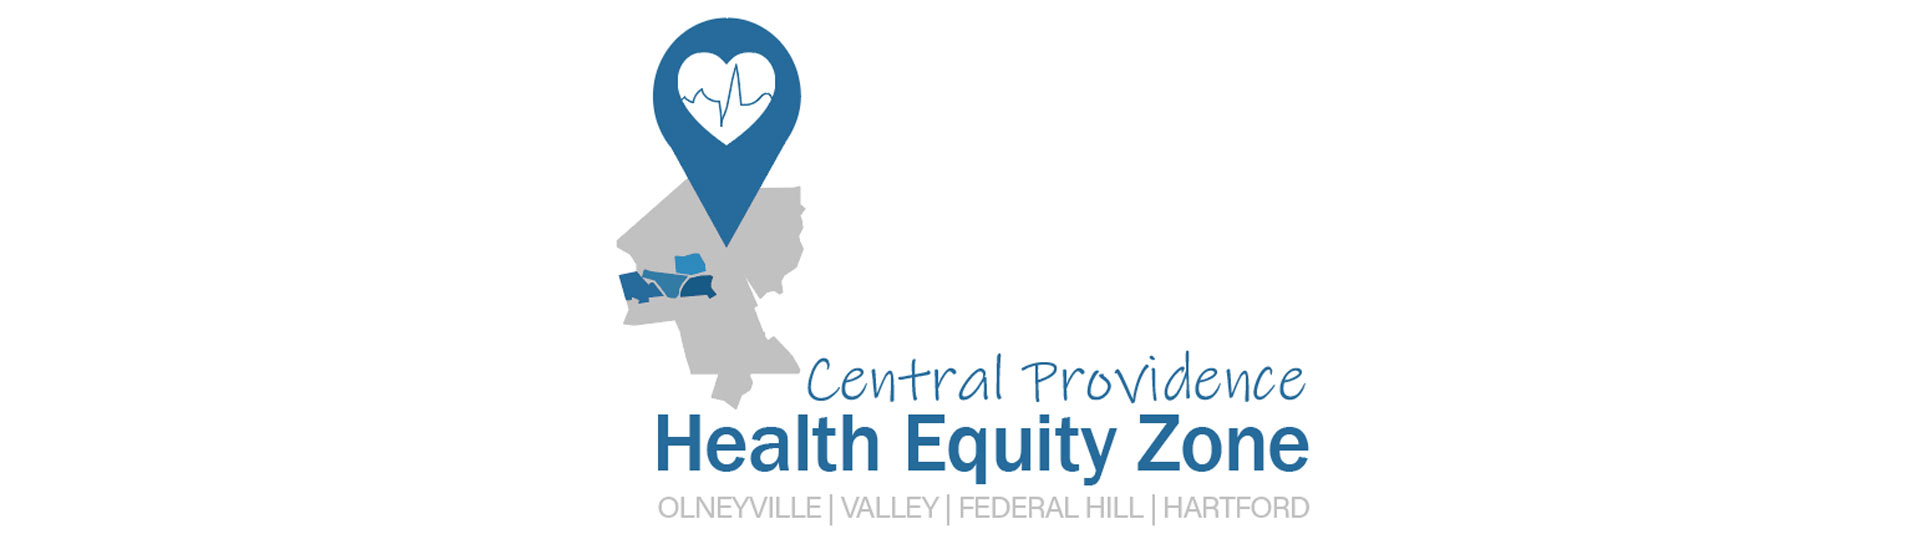 Zona de Equidad en Salud de Providencia Centro anuncia casi $400,000 en becas basadas en la comunidad